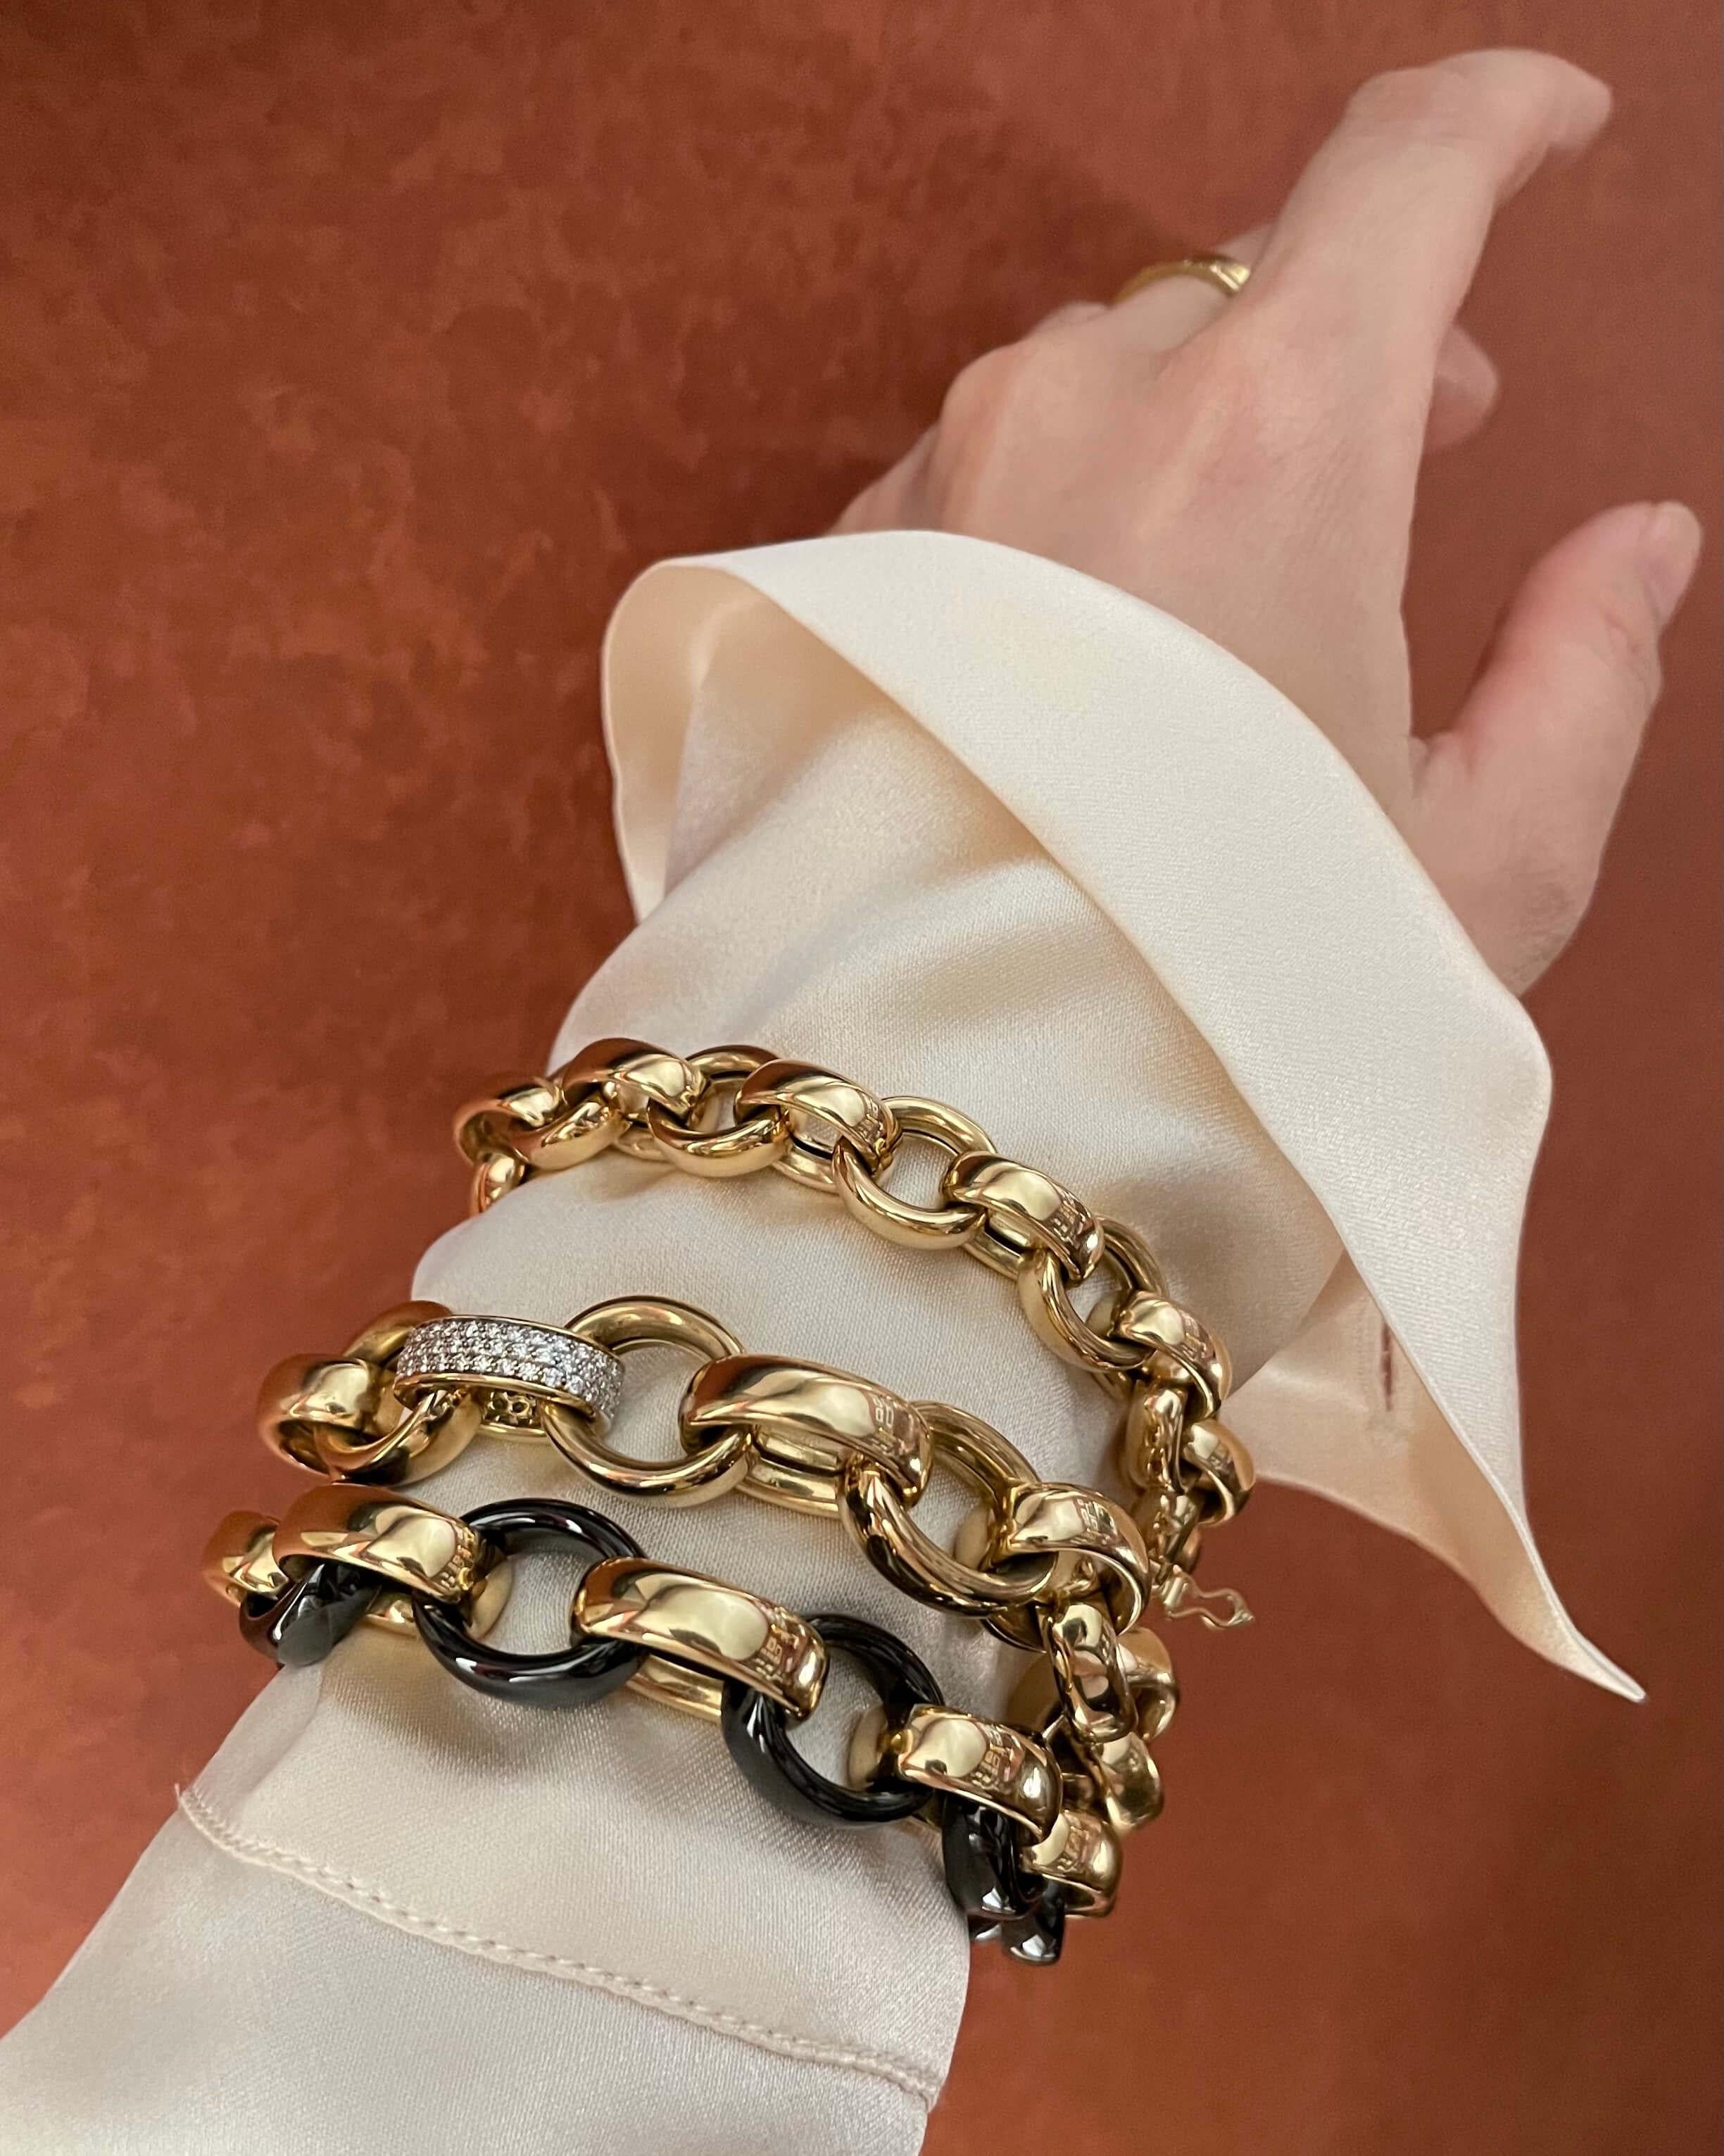 Ce bracelet en or 18 carats de Monica Rich Kosann peut être porté seul ou constituer un point de départ spectaculaire pour la constitution de votre collection de breloques.
Notre chaîne la plus lourde et la plus substantielle est mise à jour pour